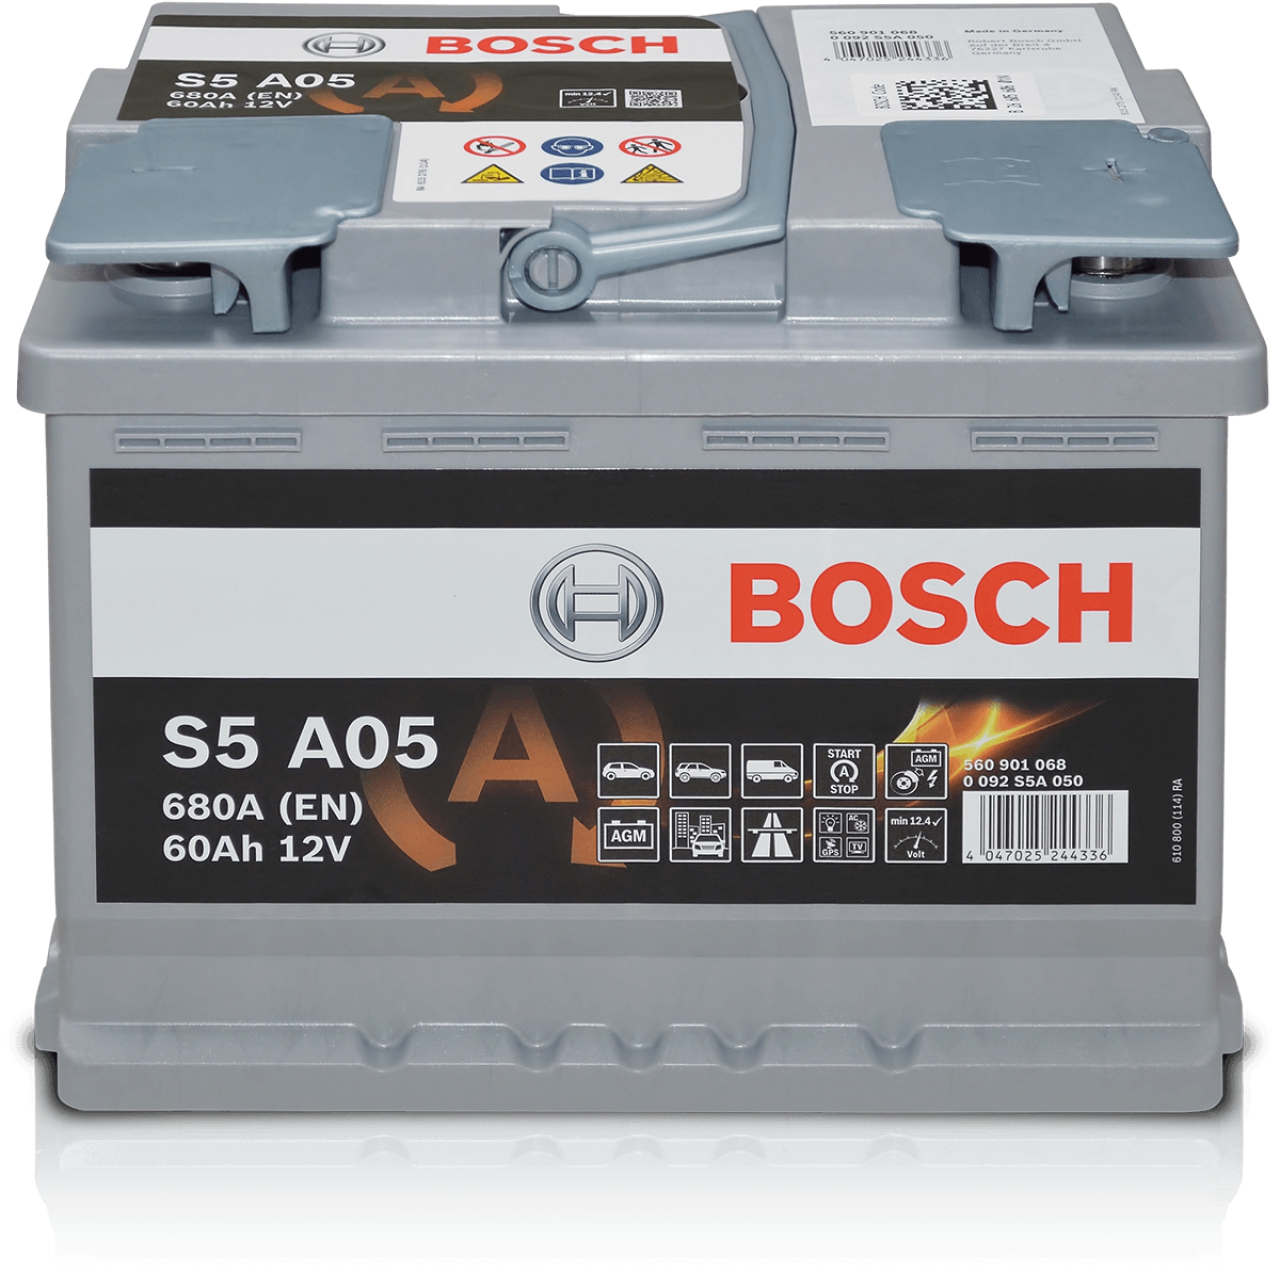 Bosch S5 A05